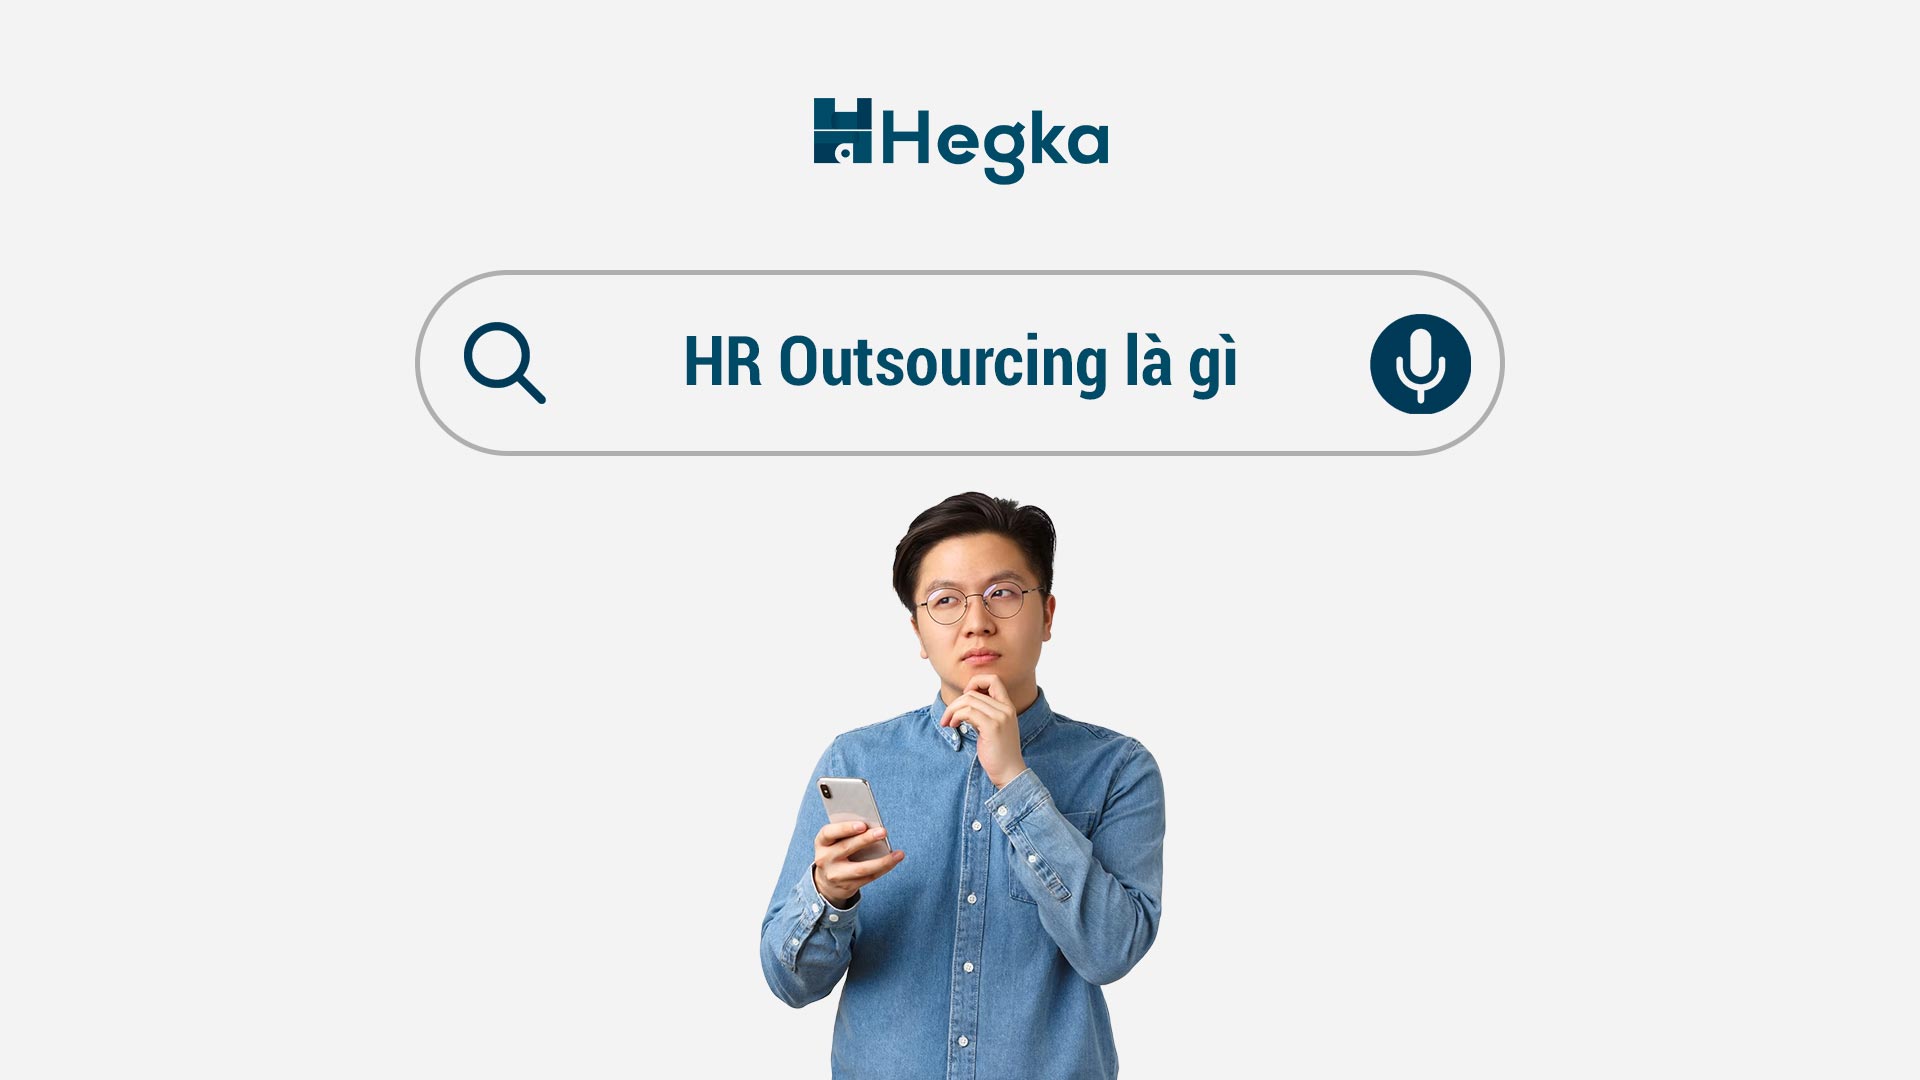 HR outsourcing là gì? 
